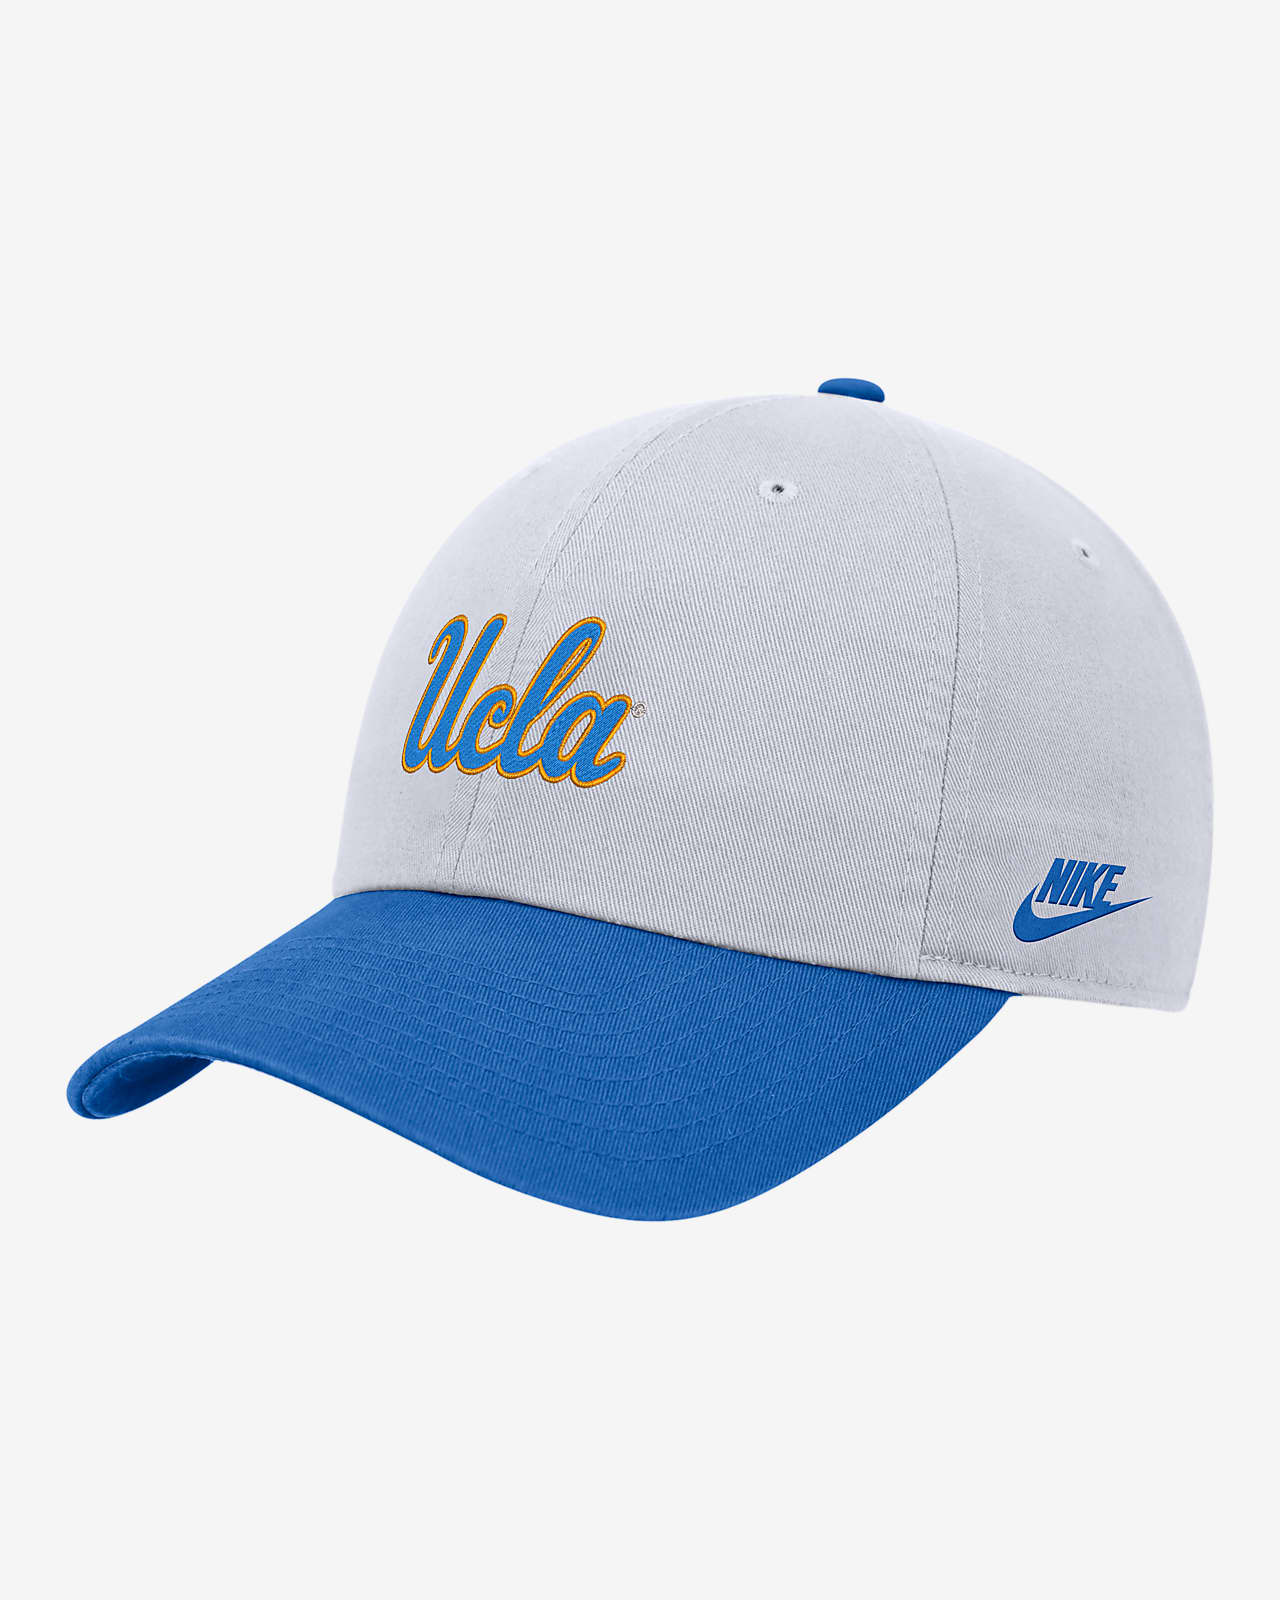 UCLA Nike College Campus Cap